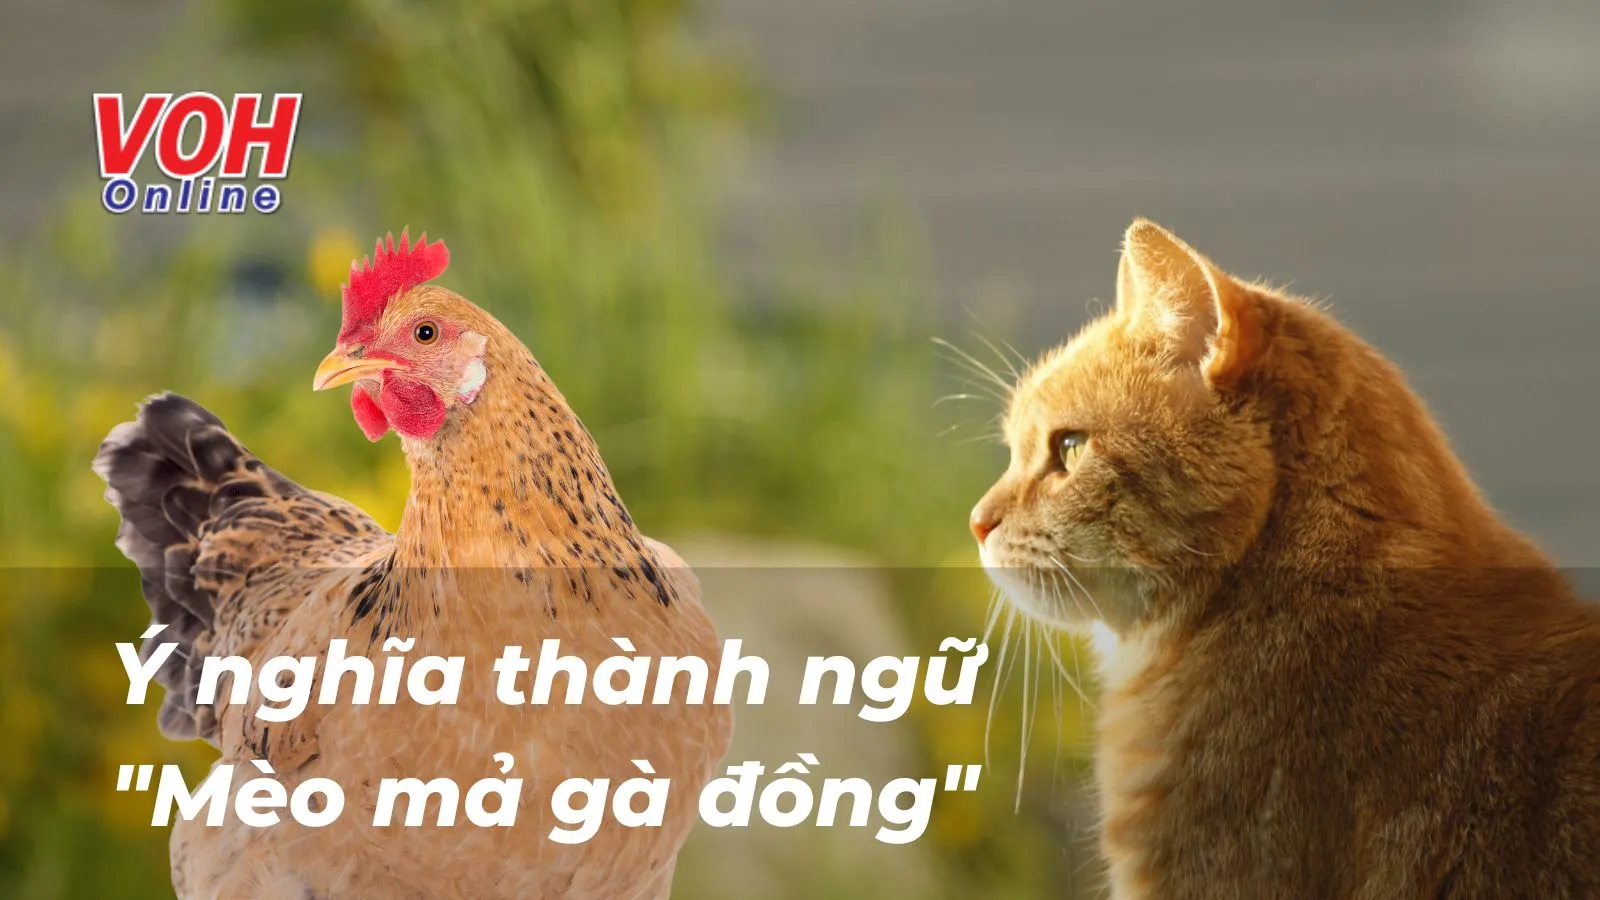 Giải thích ý nghĩa thành ngữ “Mèo mả gà đồng” nói lên điều gì?